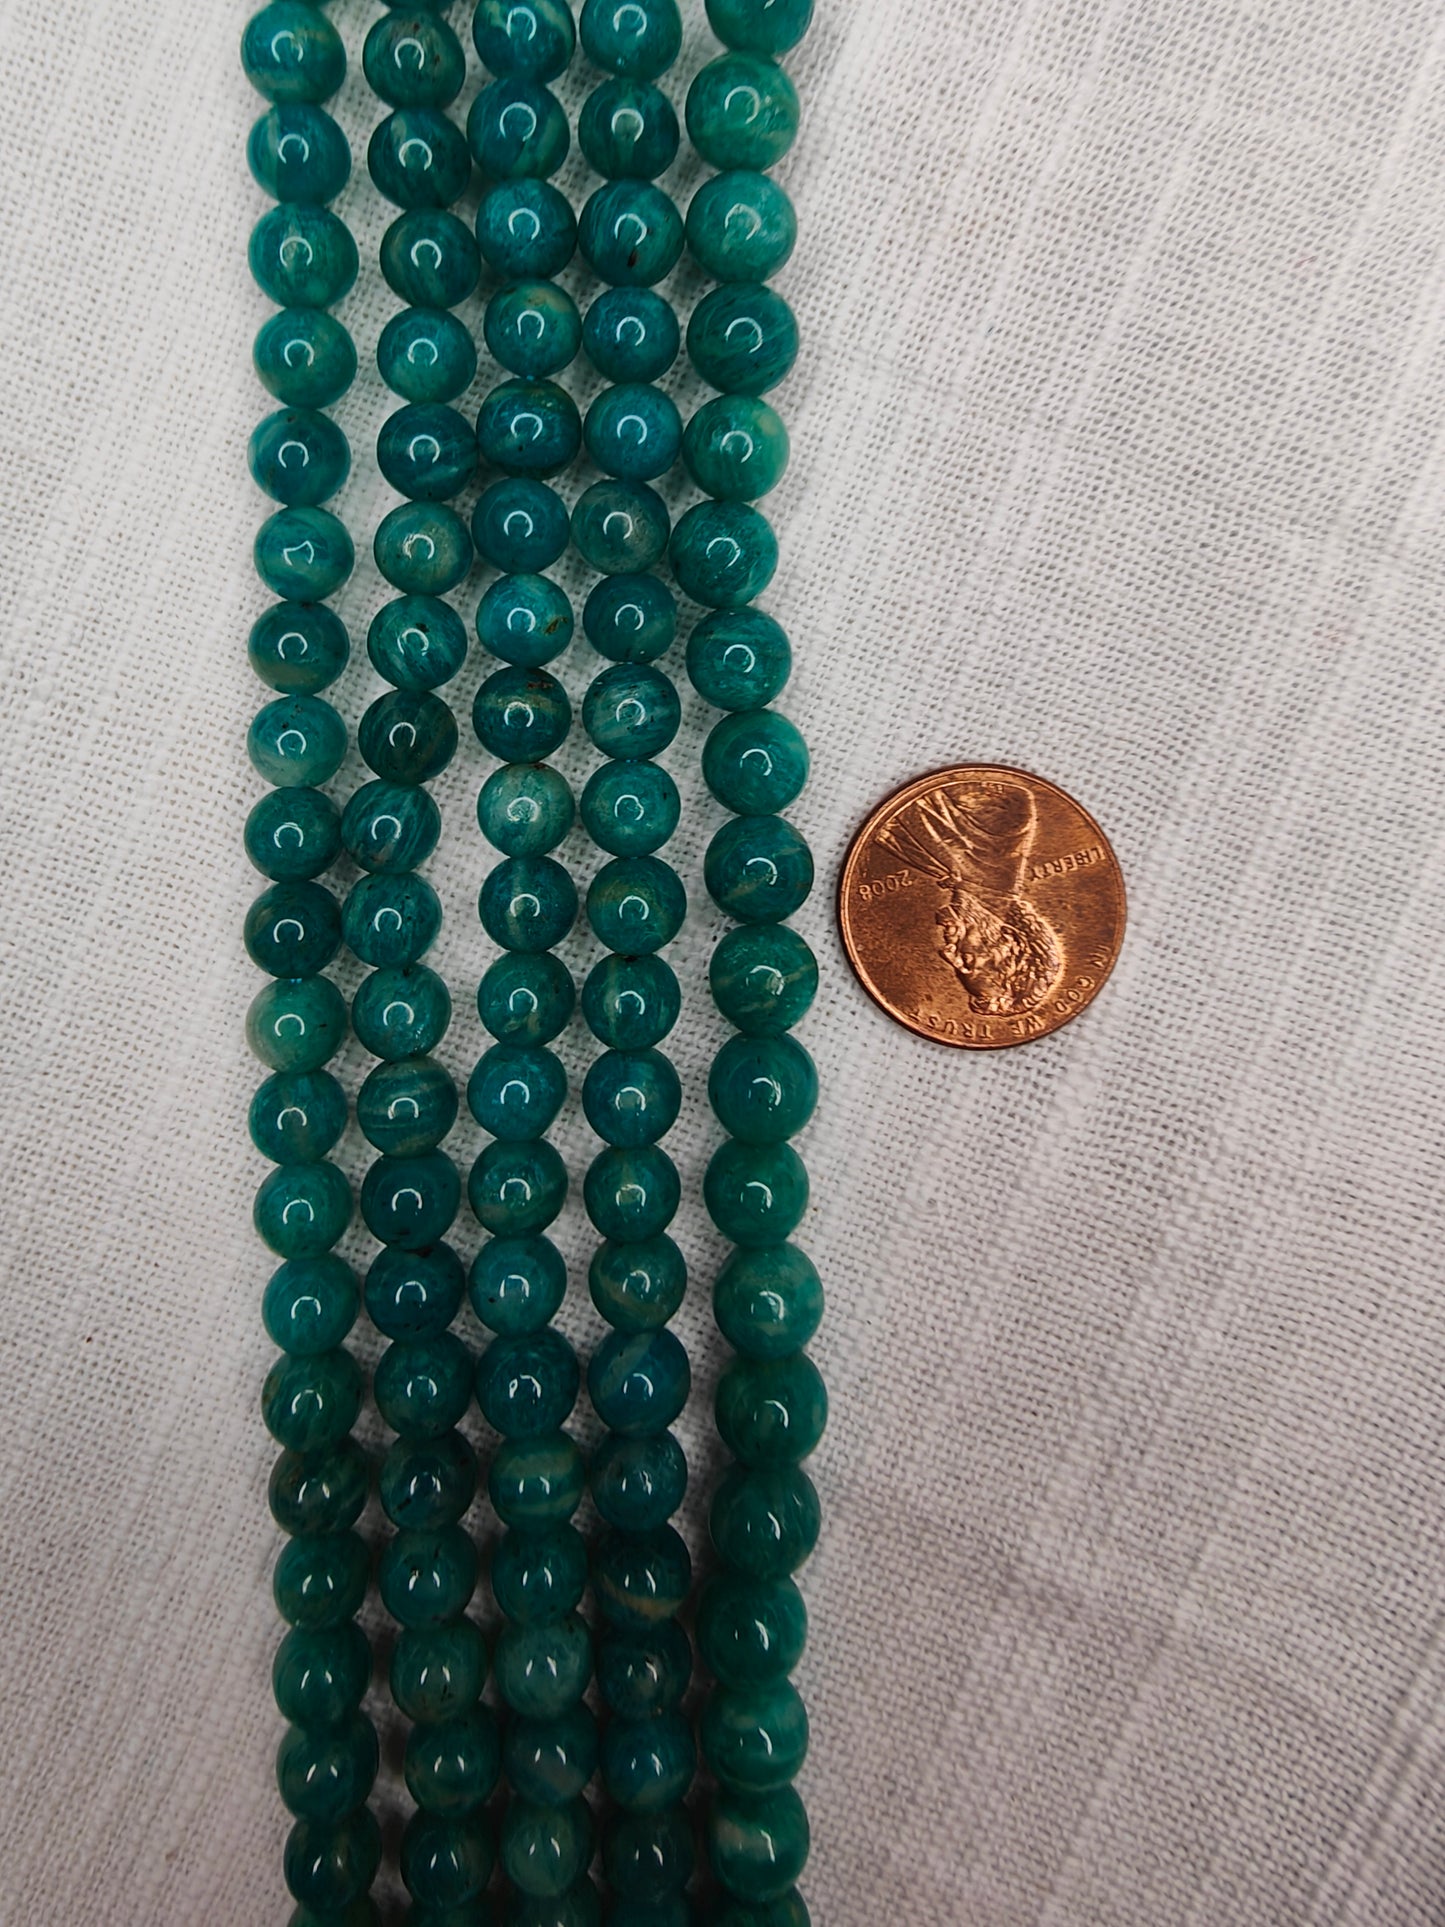 russian amazonite 7mm round beads AAA grade 15.5"strand